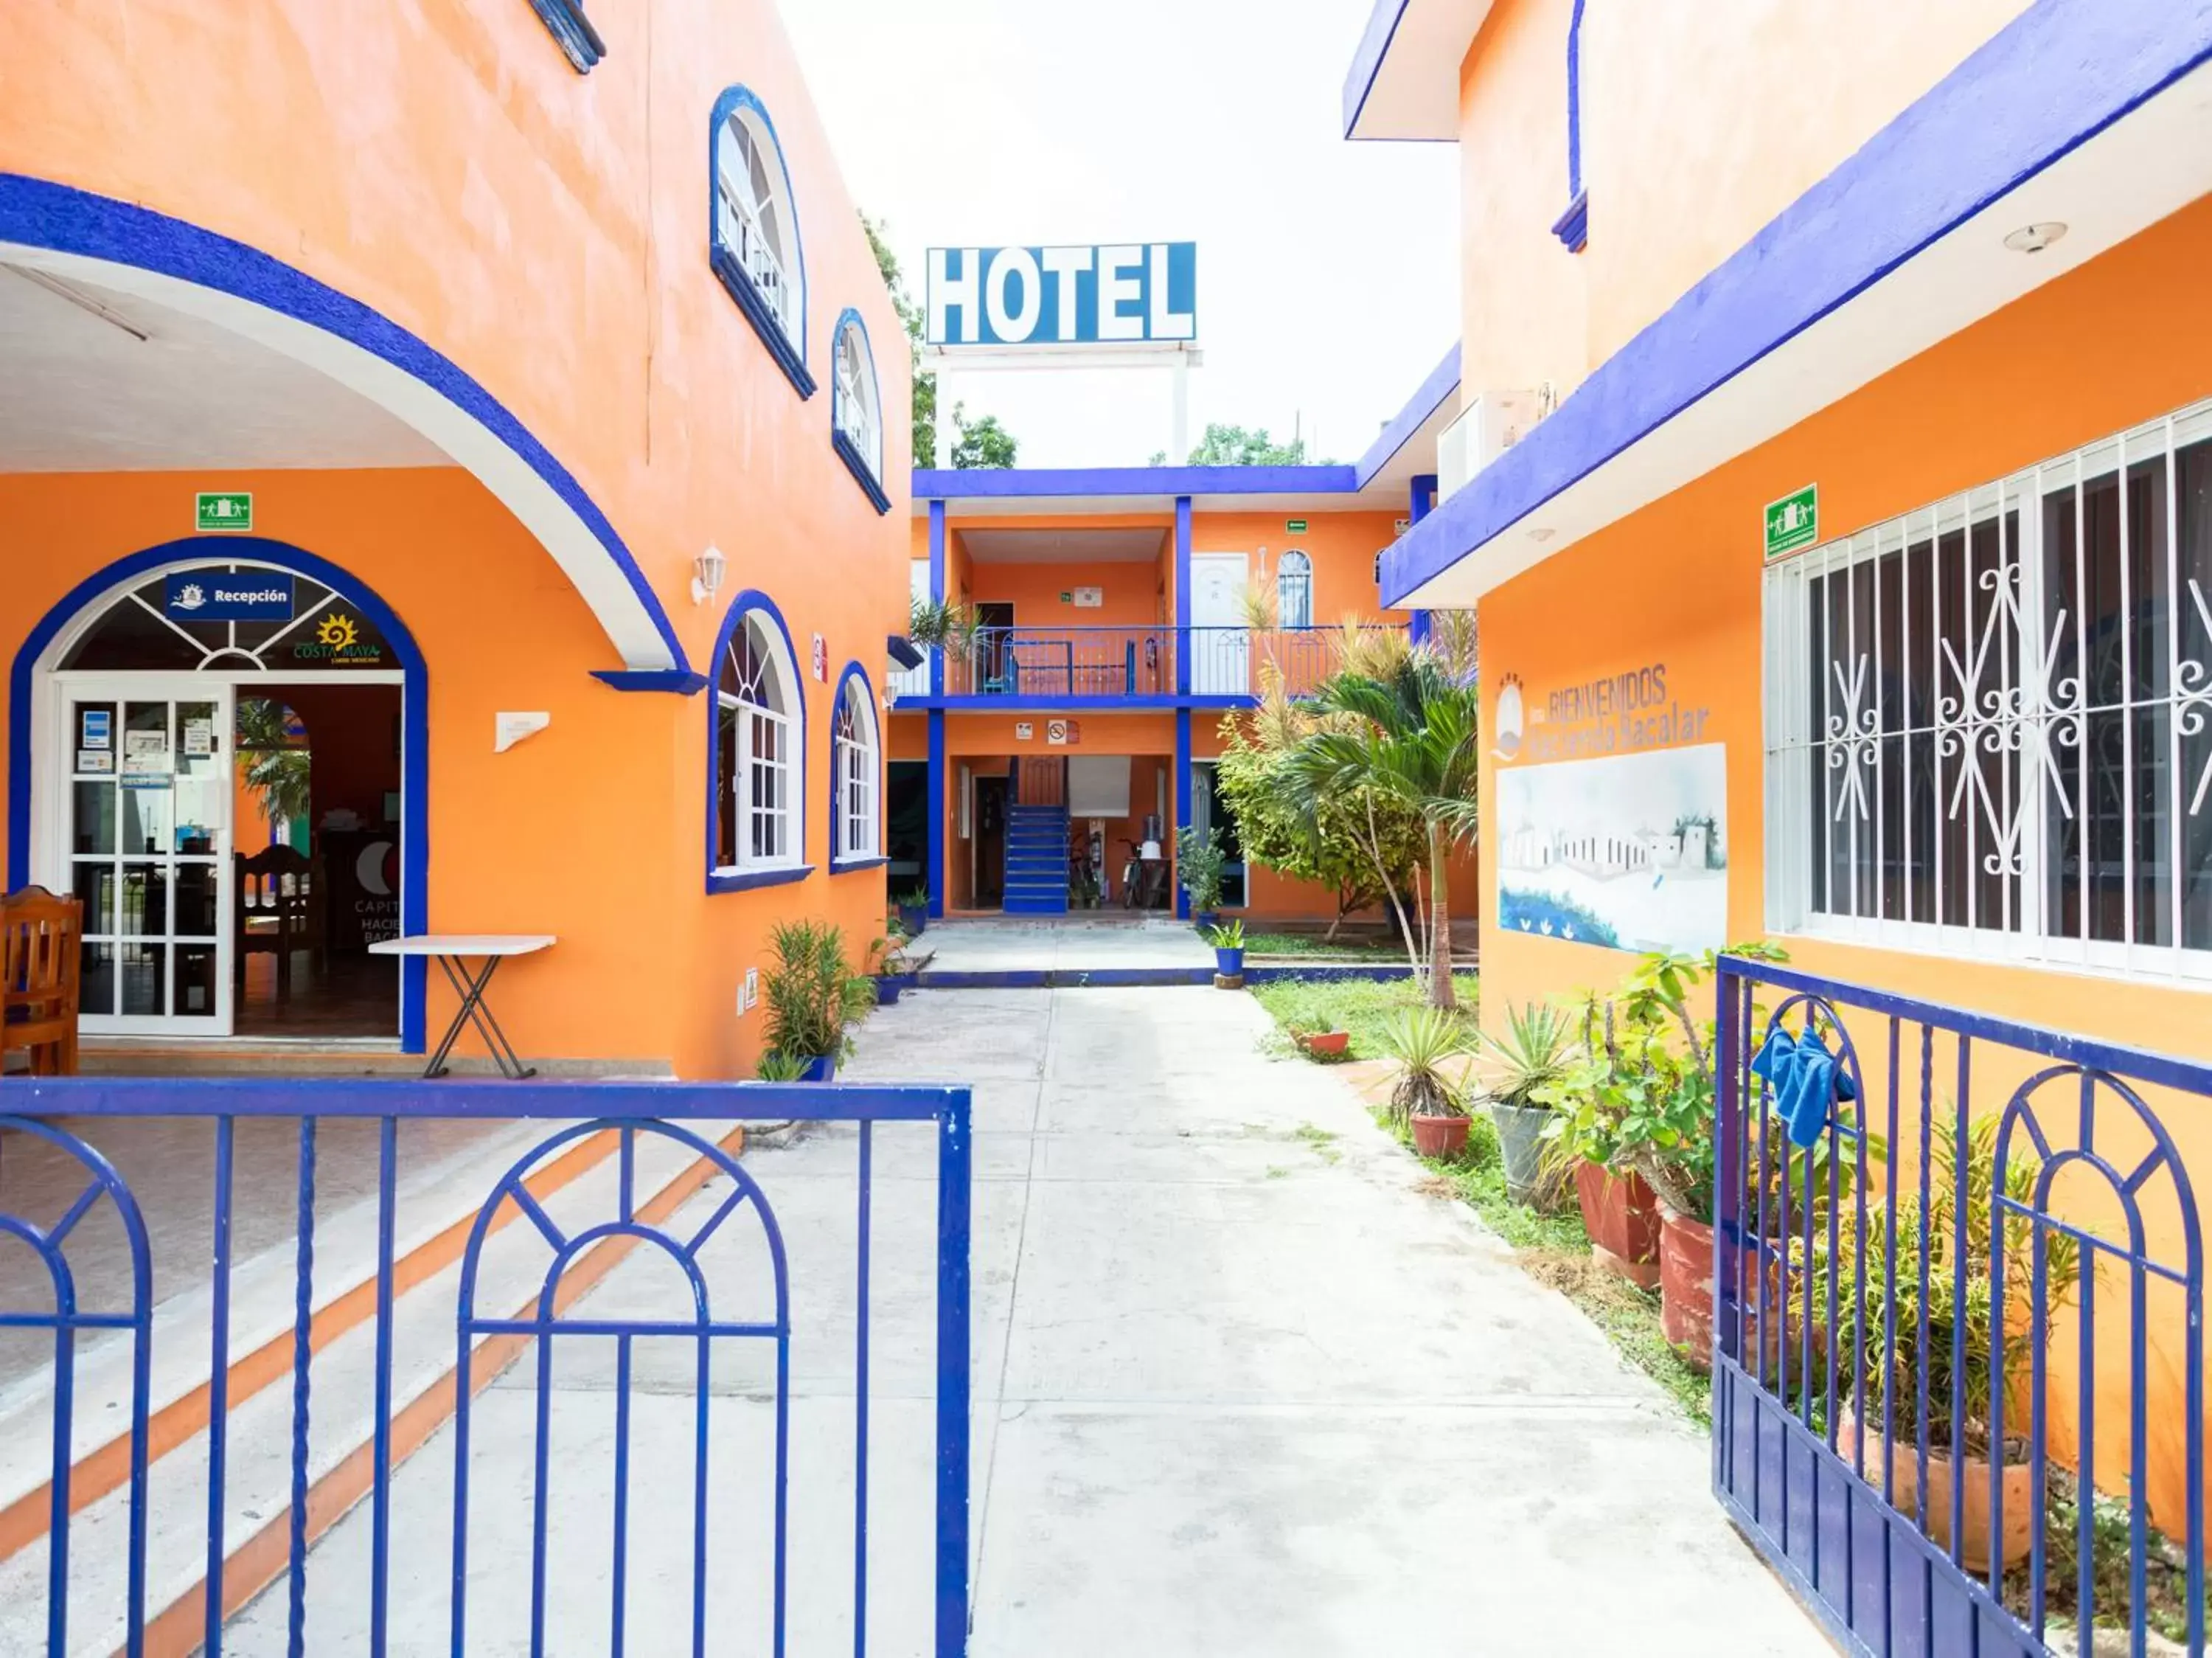 Facade/entrance in Hotel Hacienda Bacalar